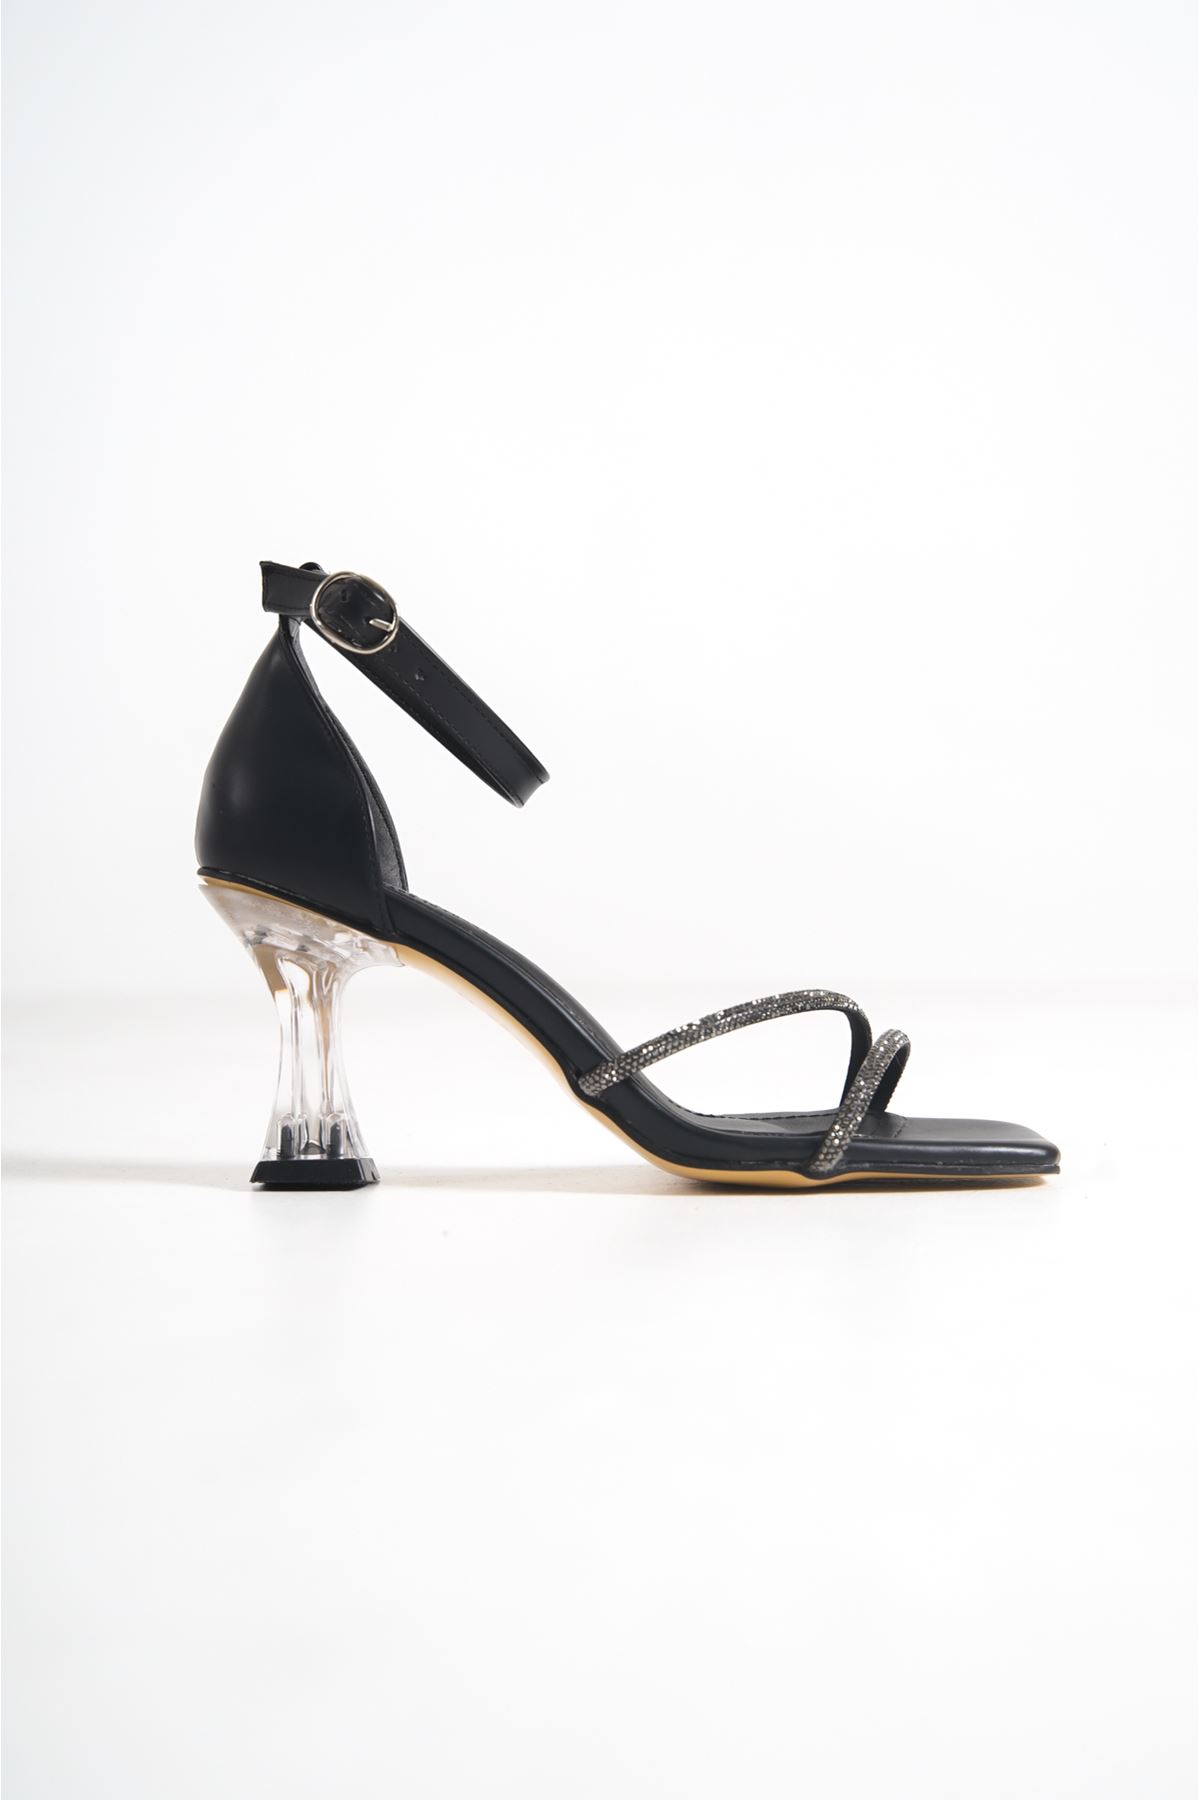 Steve Siyah Taşlı Şeffaf Topuklu Mat Deri Kadın Ayakkabı